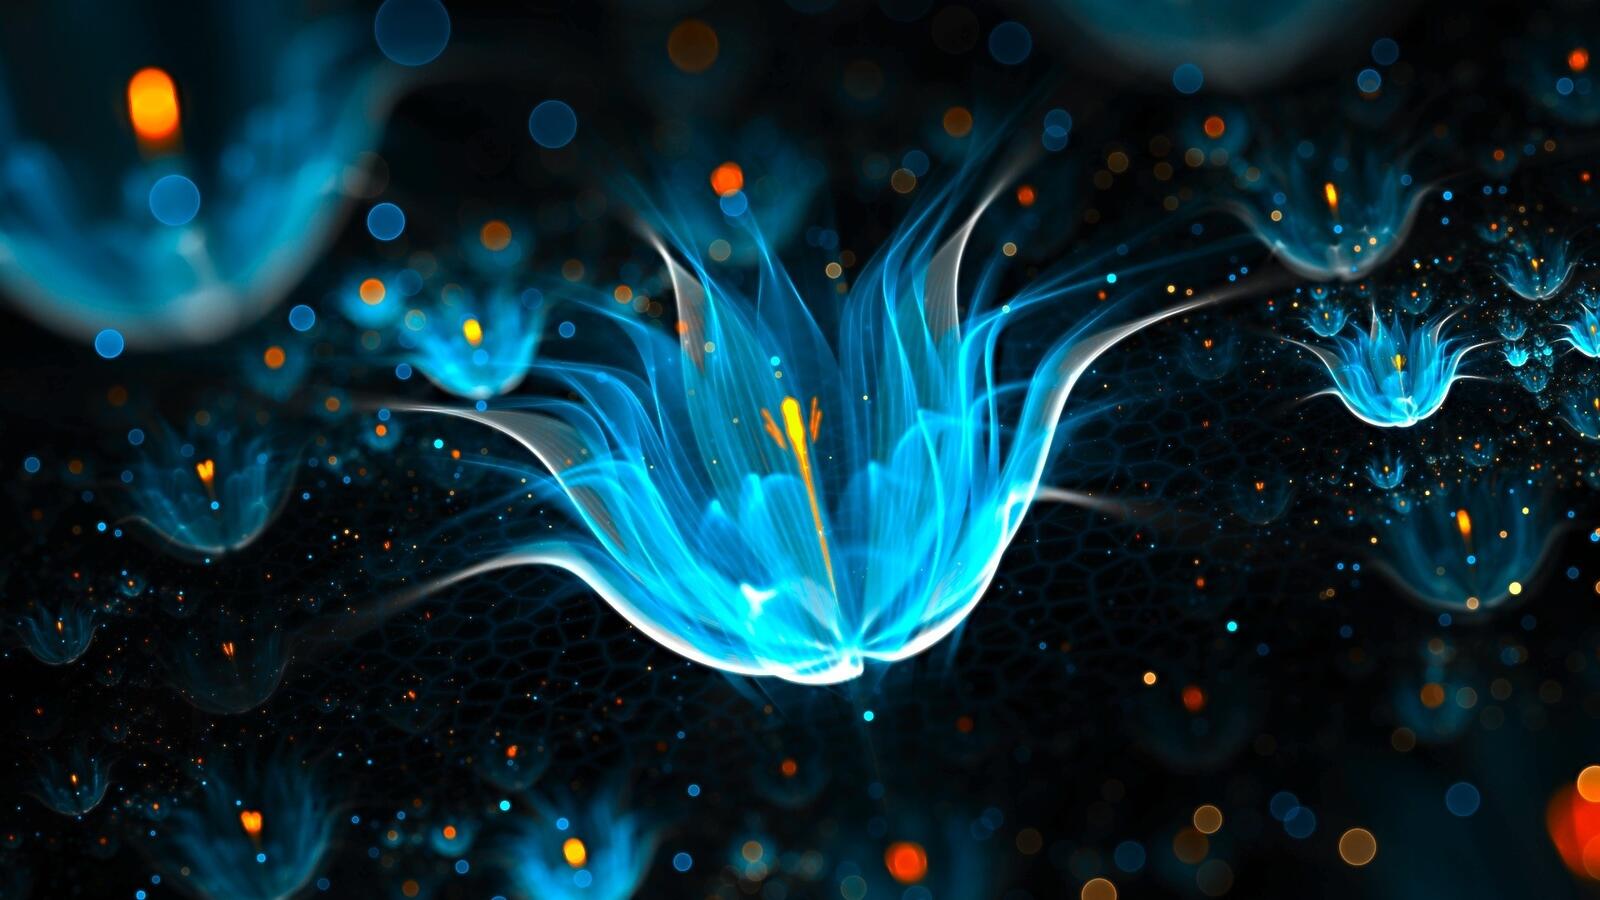 Бесплатное фото Абстрактный голубой цветок